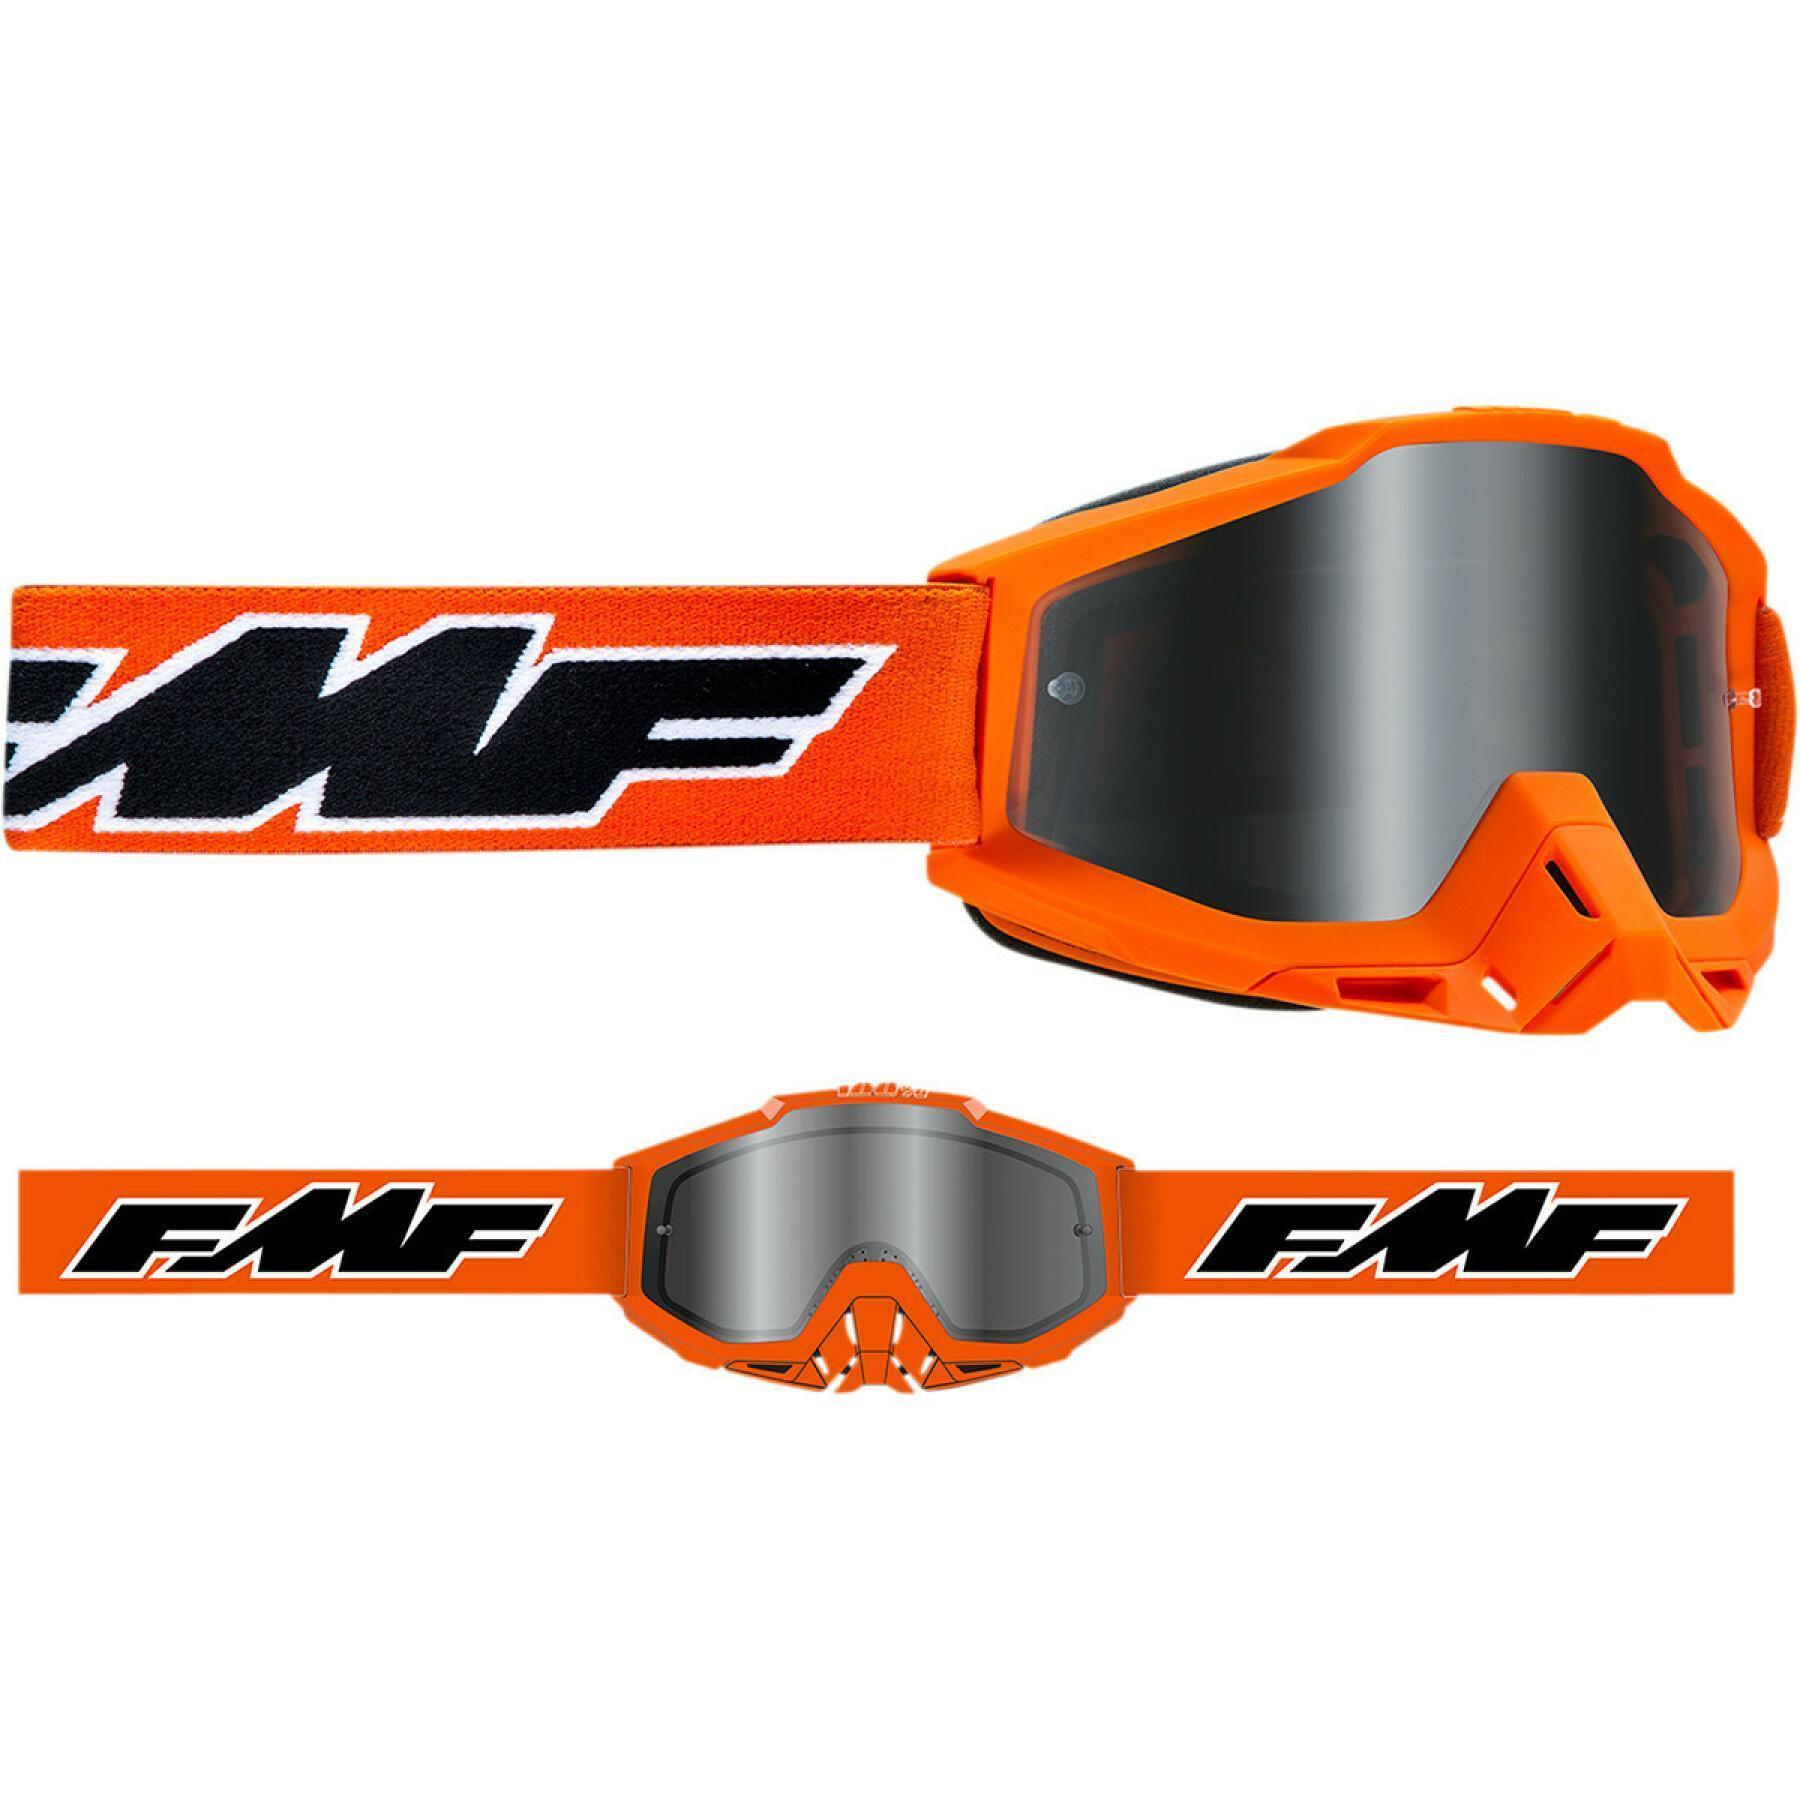 Motorrad-Crossbrille FMF Vision sand rocket